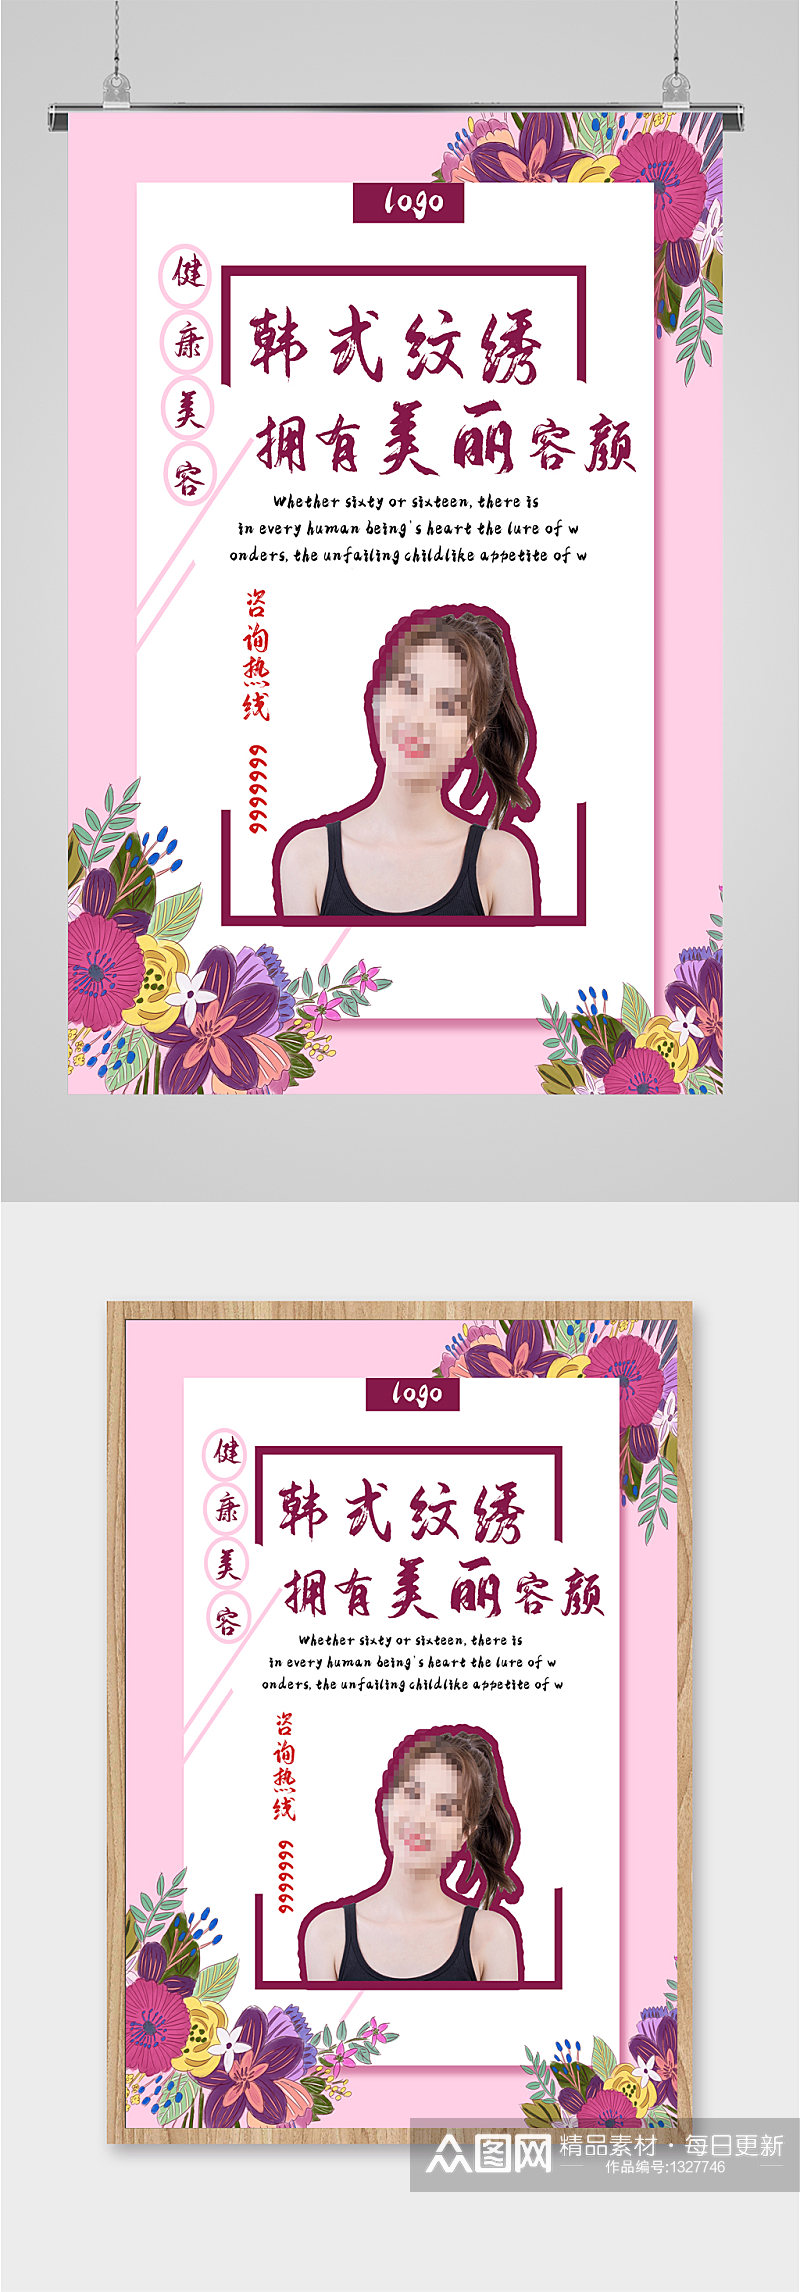 韩式纹绣美容机构海报素材